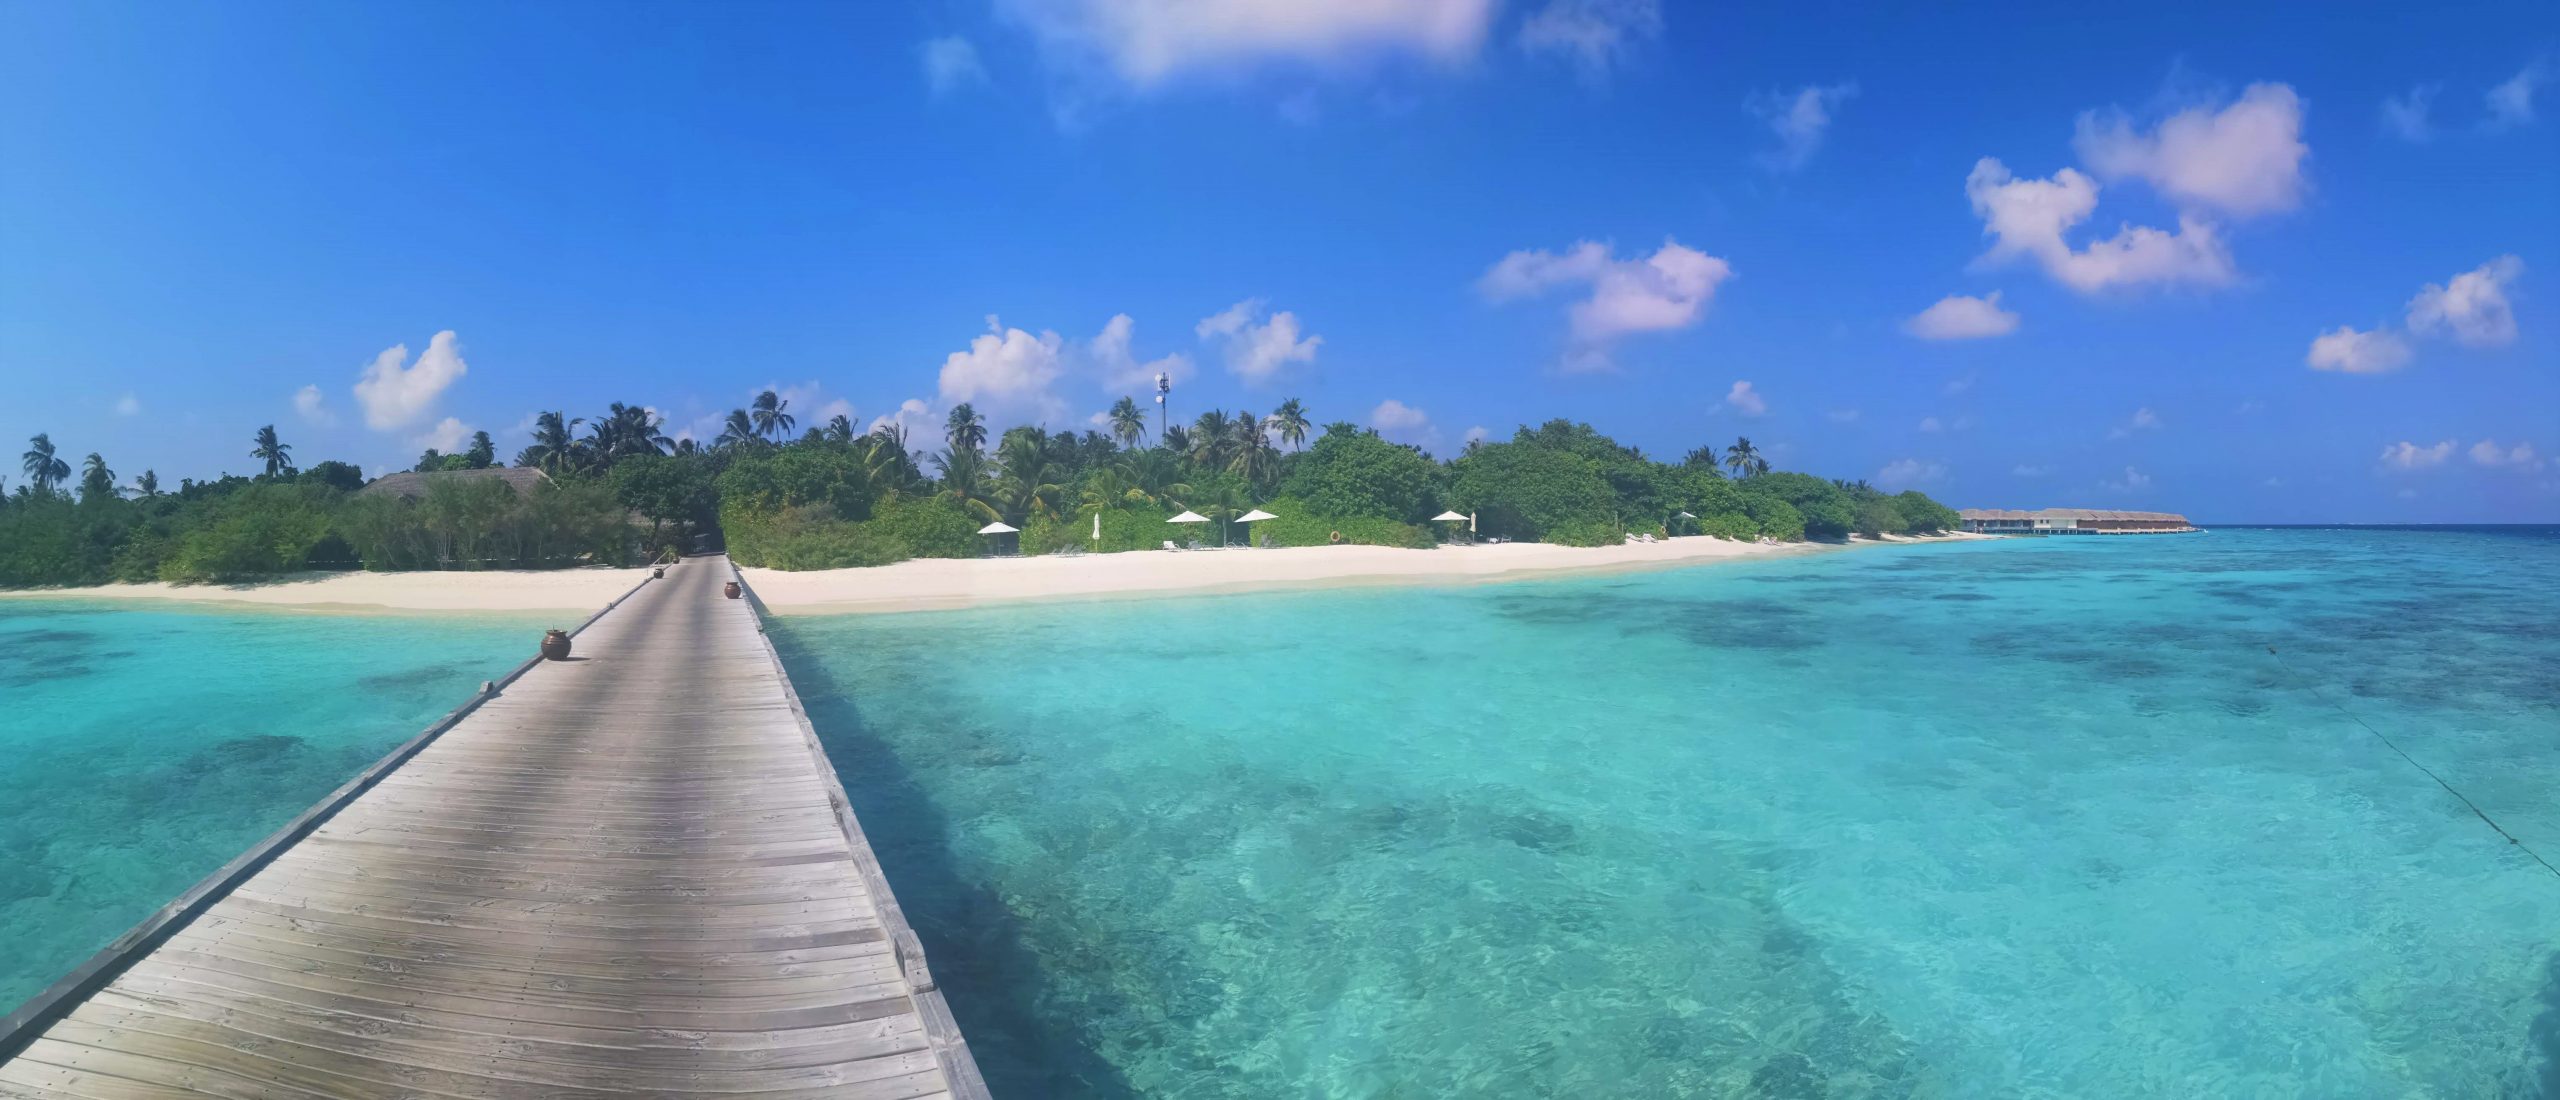 Snorkeling ed immersioni alle Maldive; l'esperienza al Resort italiano Kudafushi, Atollo di Raa